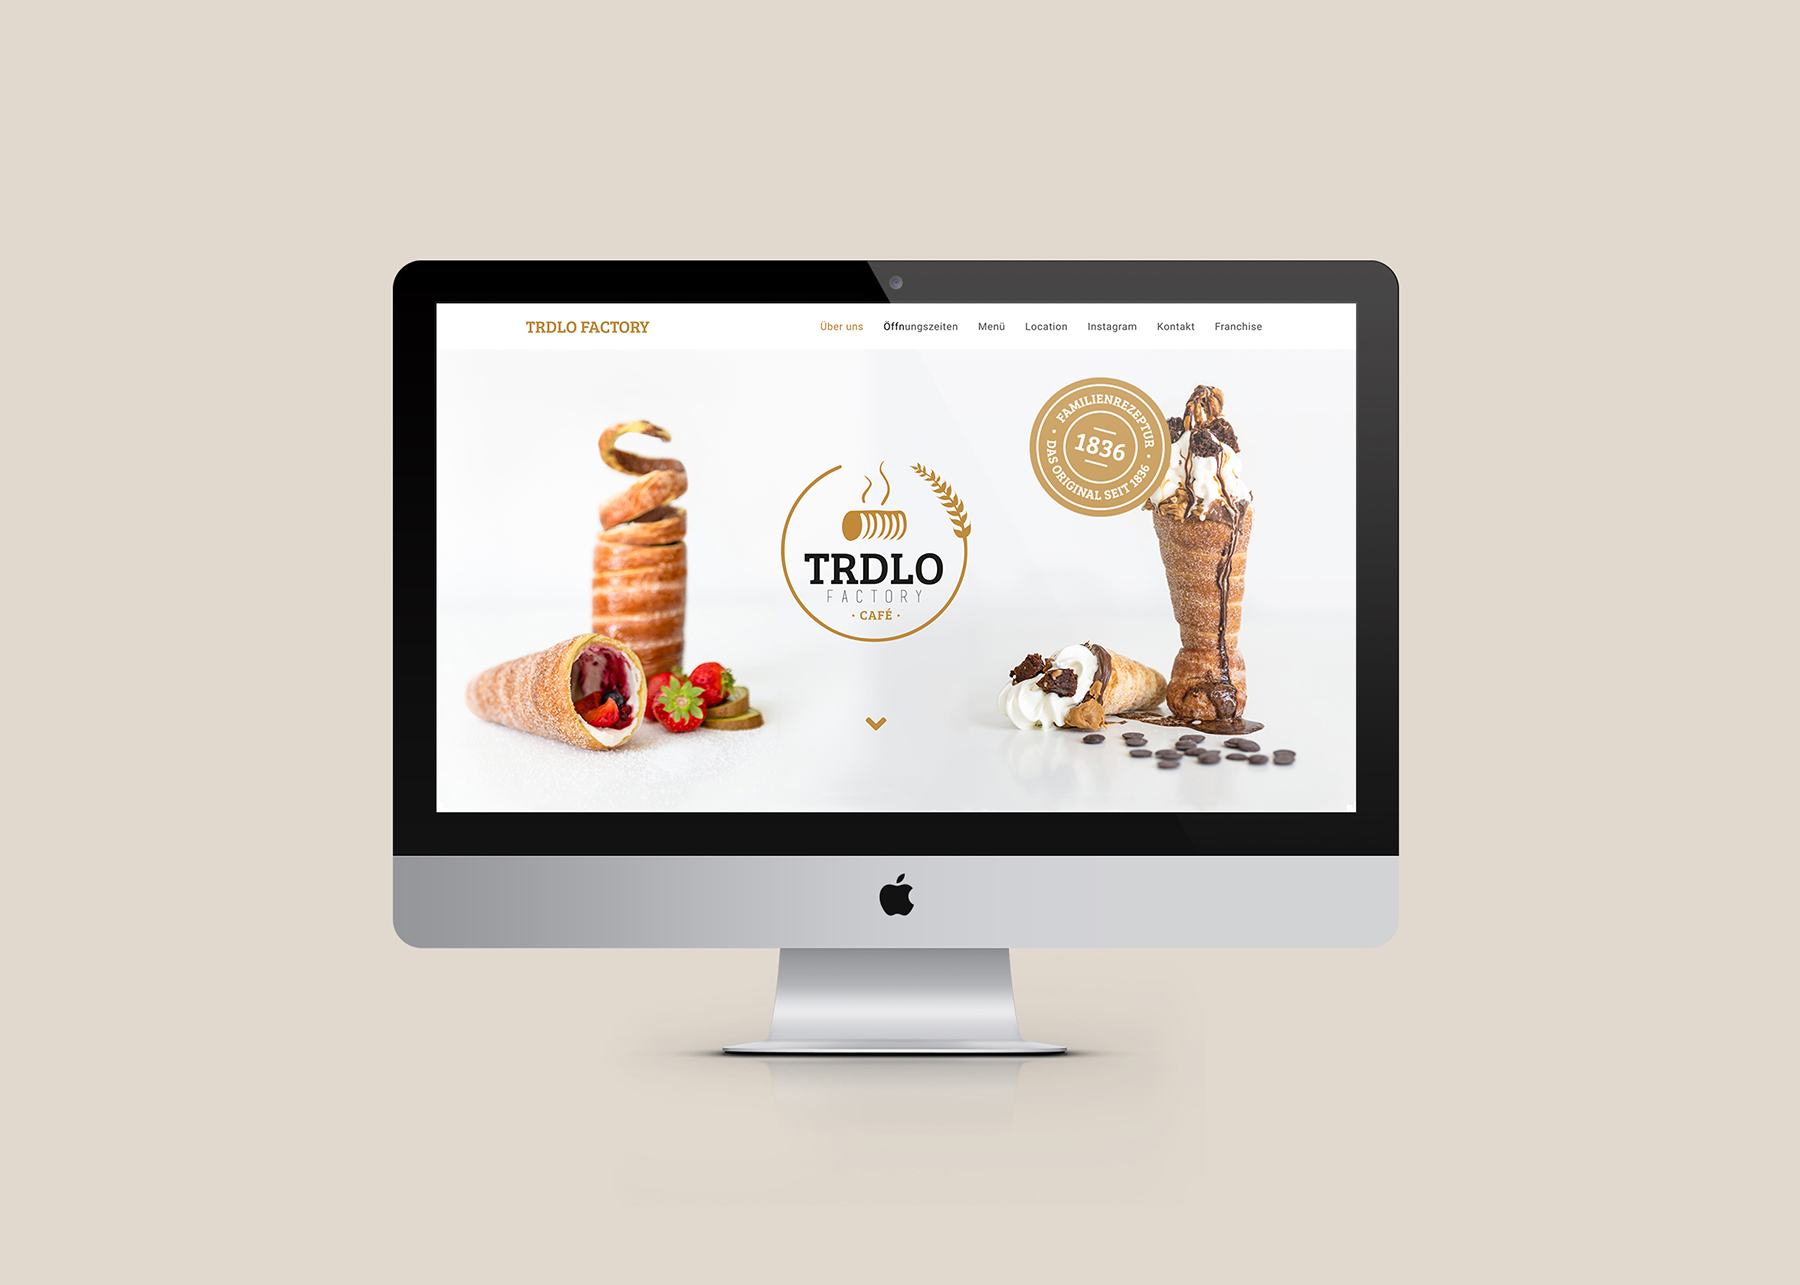 the Trdlo Factory website